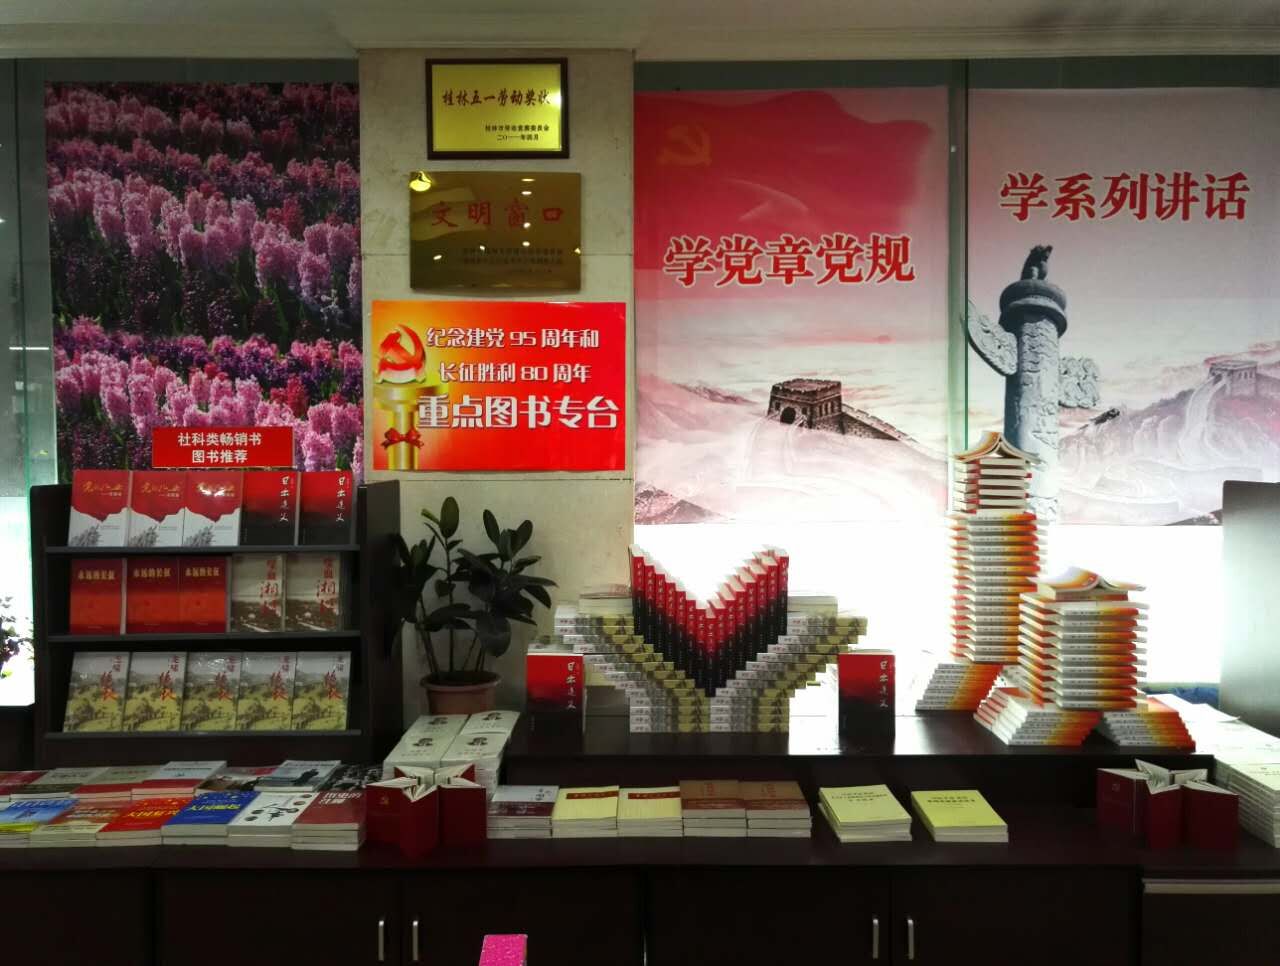 七一前夕,桂林书城精心摆设书花造型,在卖场显著位置设立